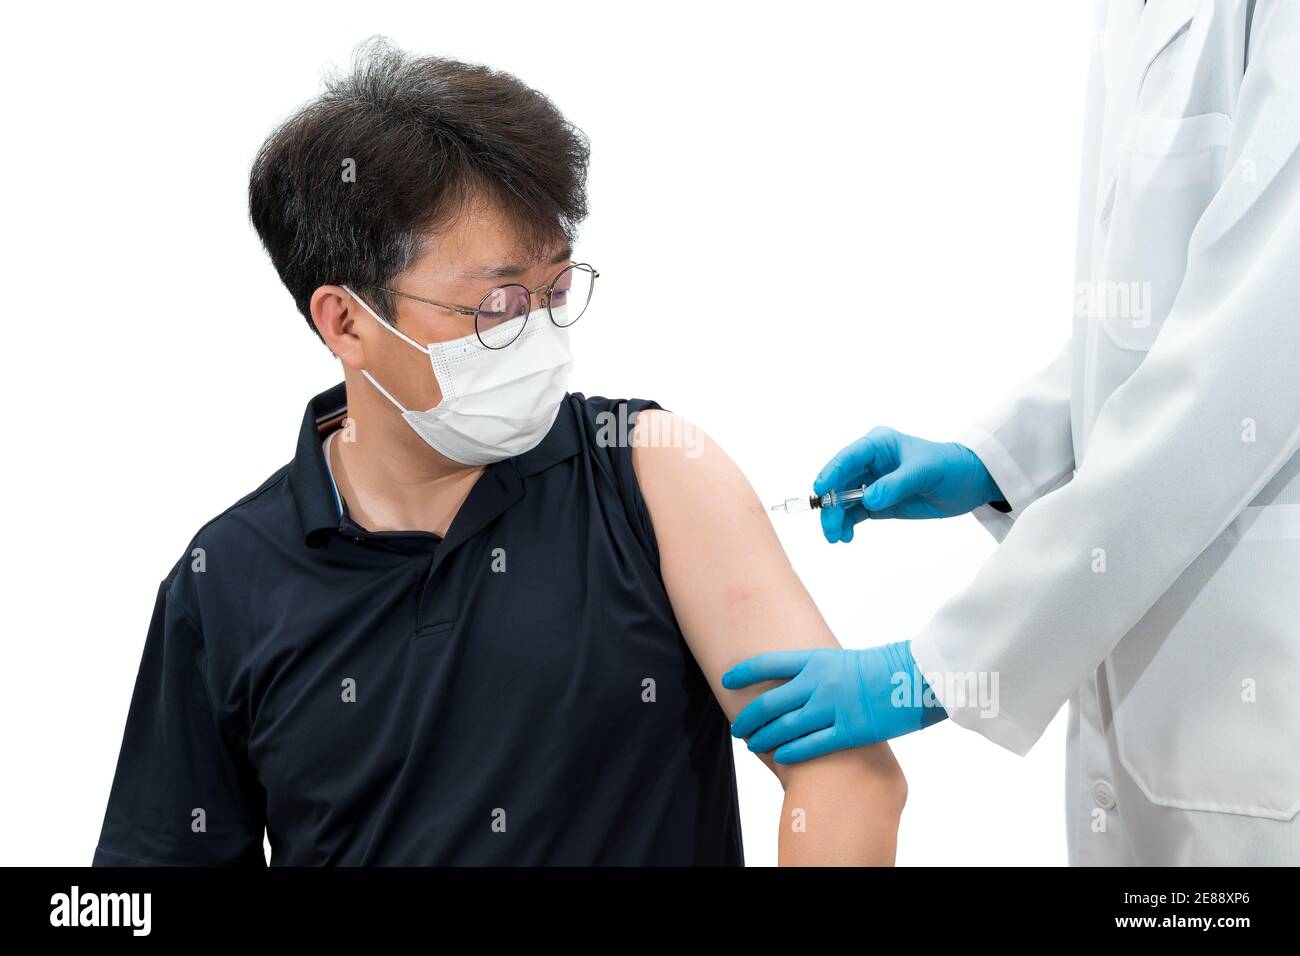 Un medico che tiene sotto controllo una siringa dà un'iniezione di vaccino ad un paziente asiatico di mezza età che indossa una maschera medica. Foto Stock